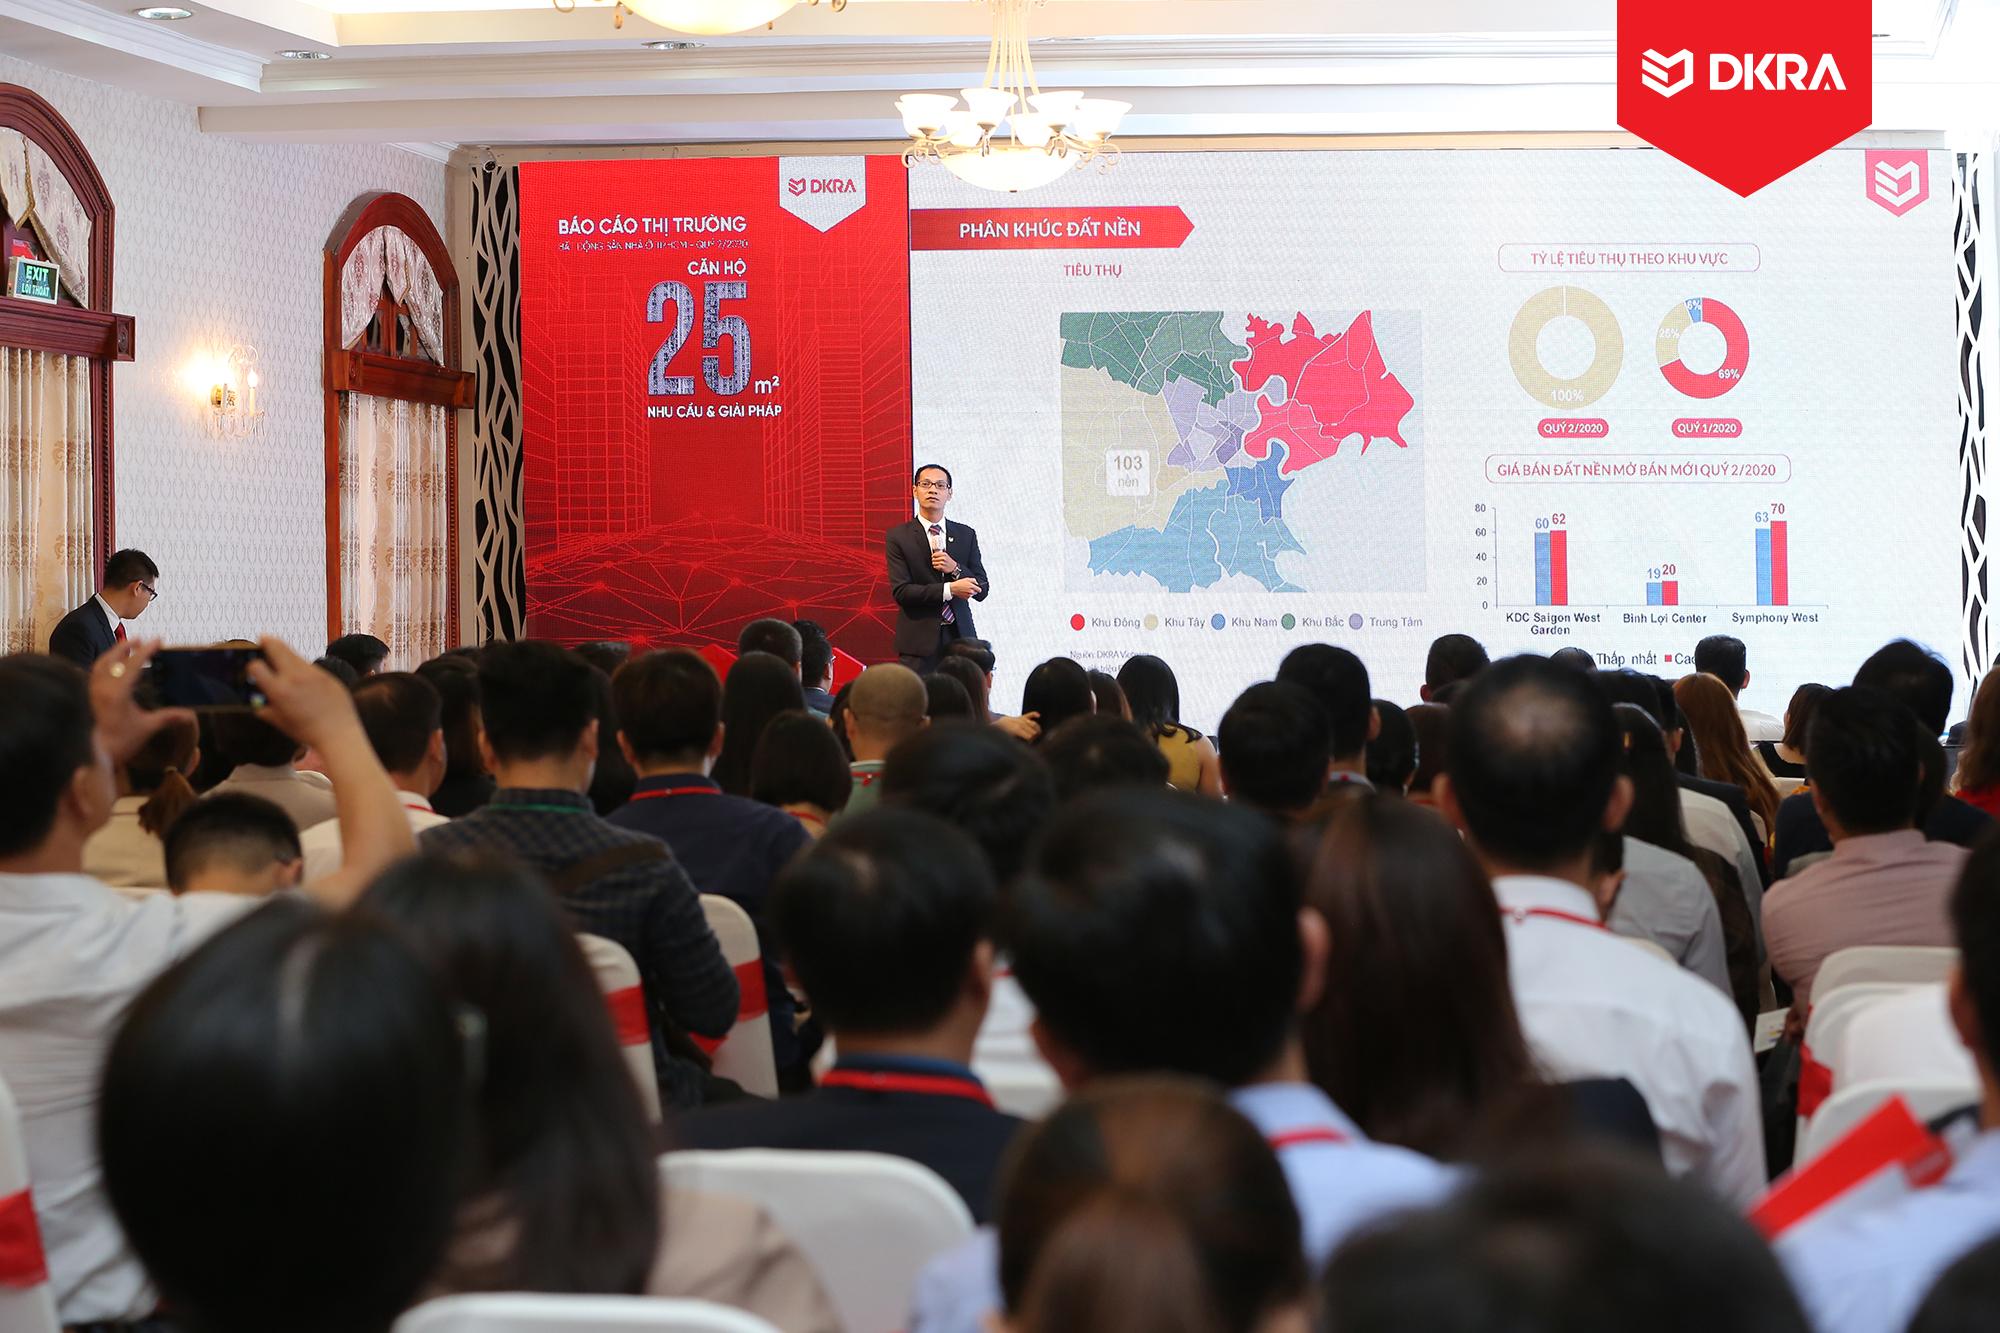 Ông Nguyễn Hoàng - Giám đốc bộ phận R&D DKRA Vietnam trình bày diễn biến thị trường bất động sản nhà ở TP.HCM Quý 2/2020 và dự báo thị trường Quý 3/2020.